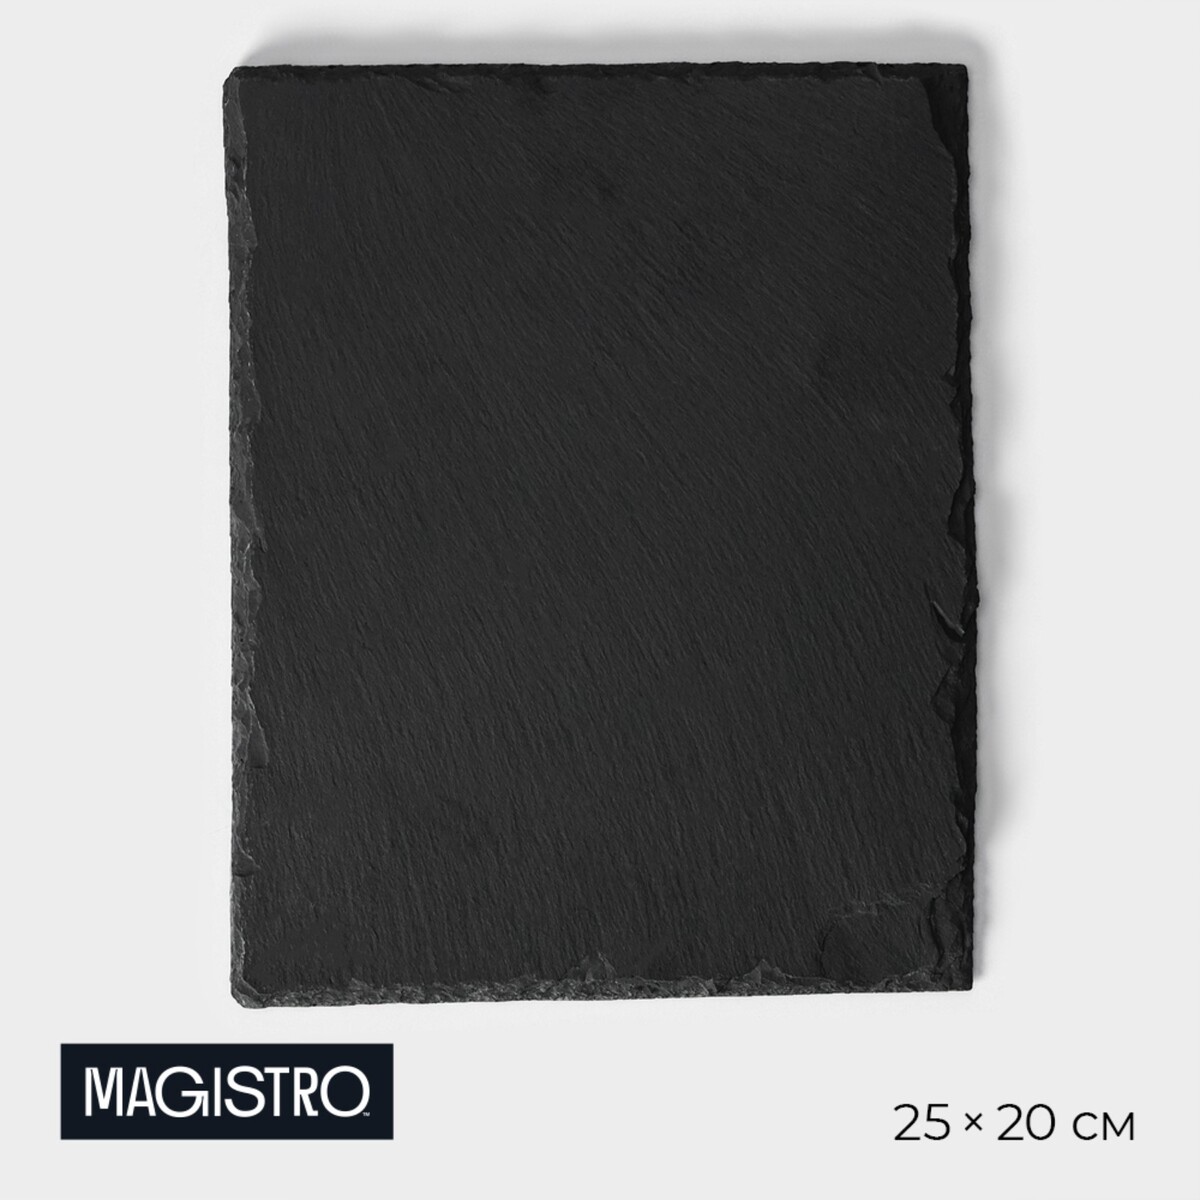 Доска для подачи из сланца magistro valley, 25×20 см доска для подачи из сланца magistro valley 35×20 см